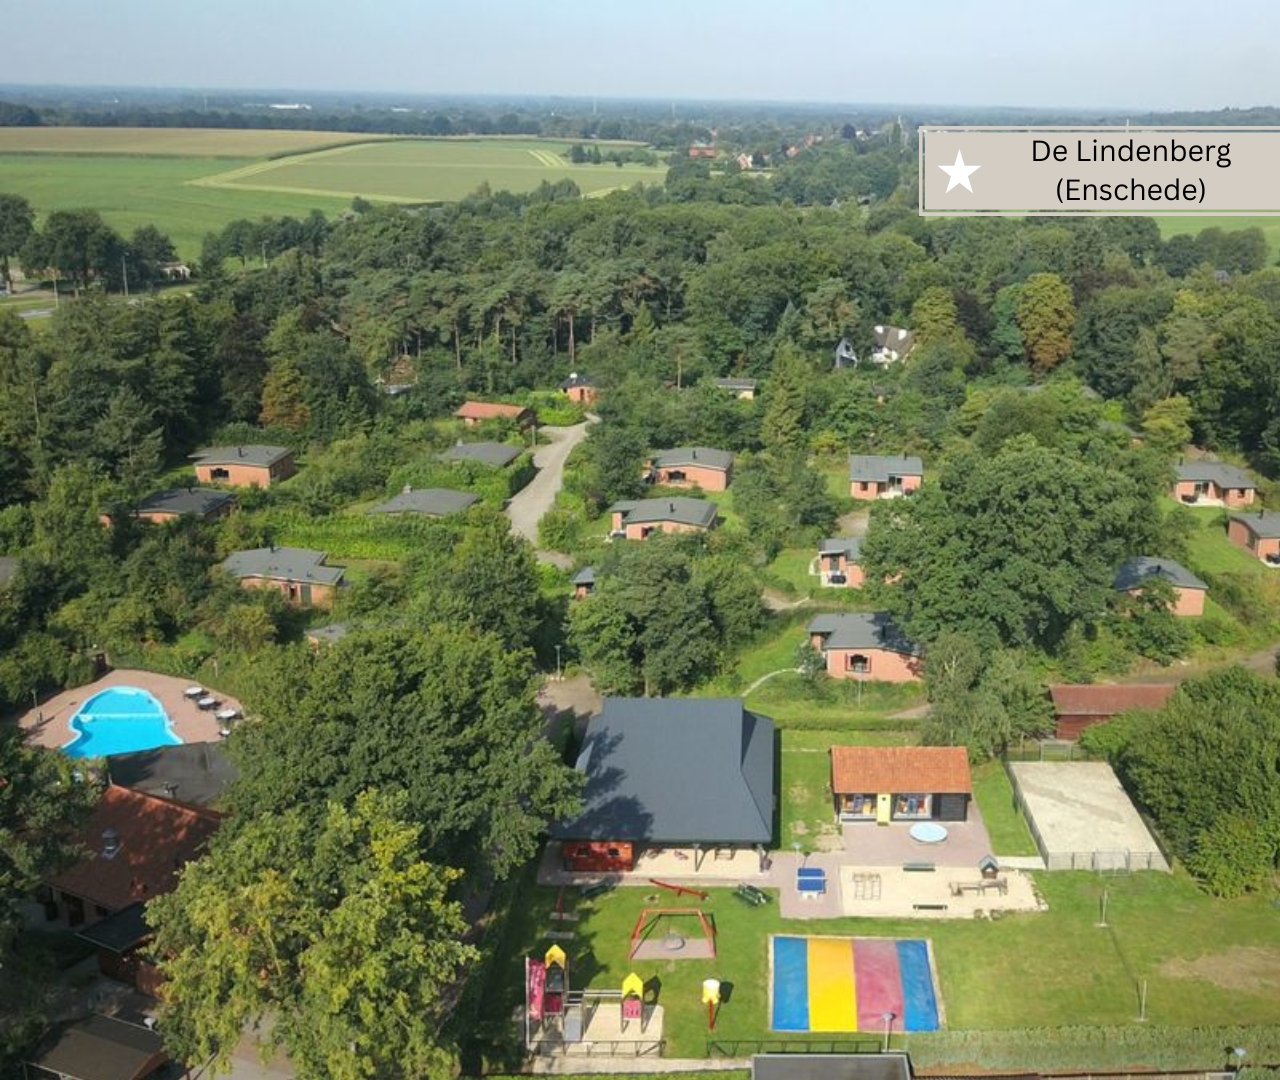 günstige und gute Ferienparks in Holland - De Lindenberg